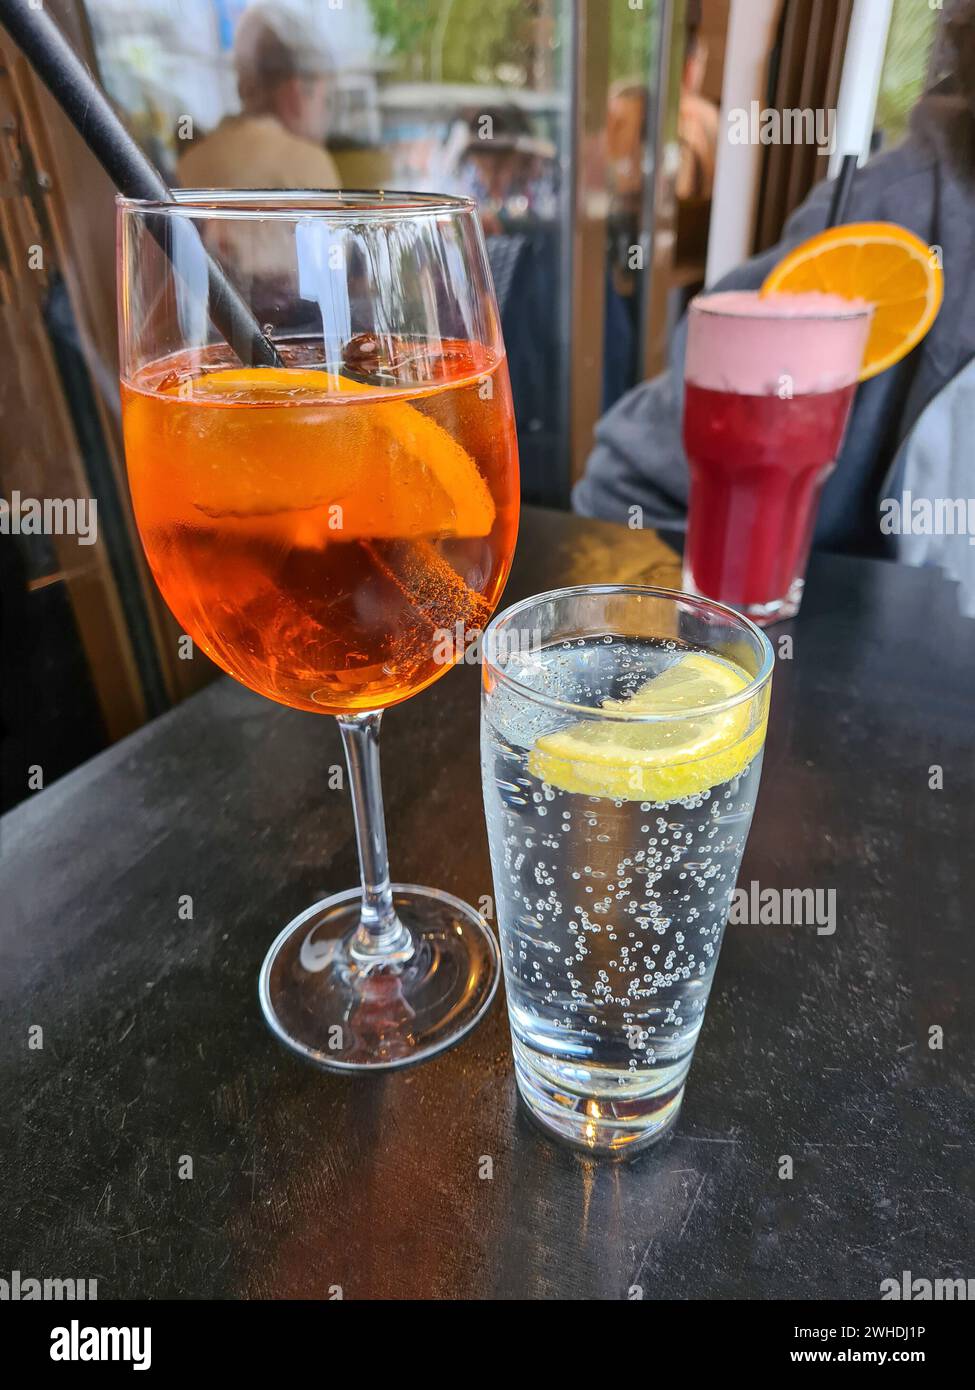 La bibita alcolica Aperol Spritz è collocata su un tavolo accanto a un bicchiere di acqua minerale frizzante e un cocktail analcolico di frutta rossa sullo sfondo Foto Stock